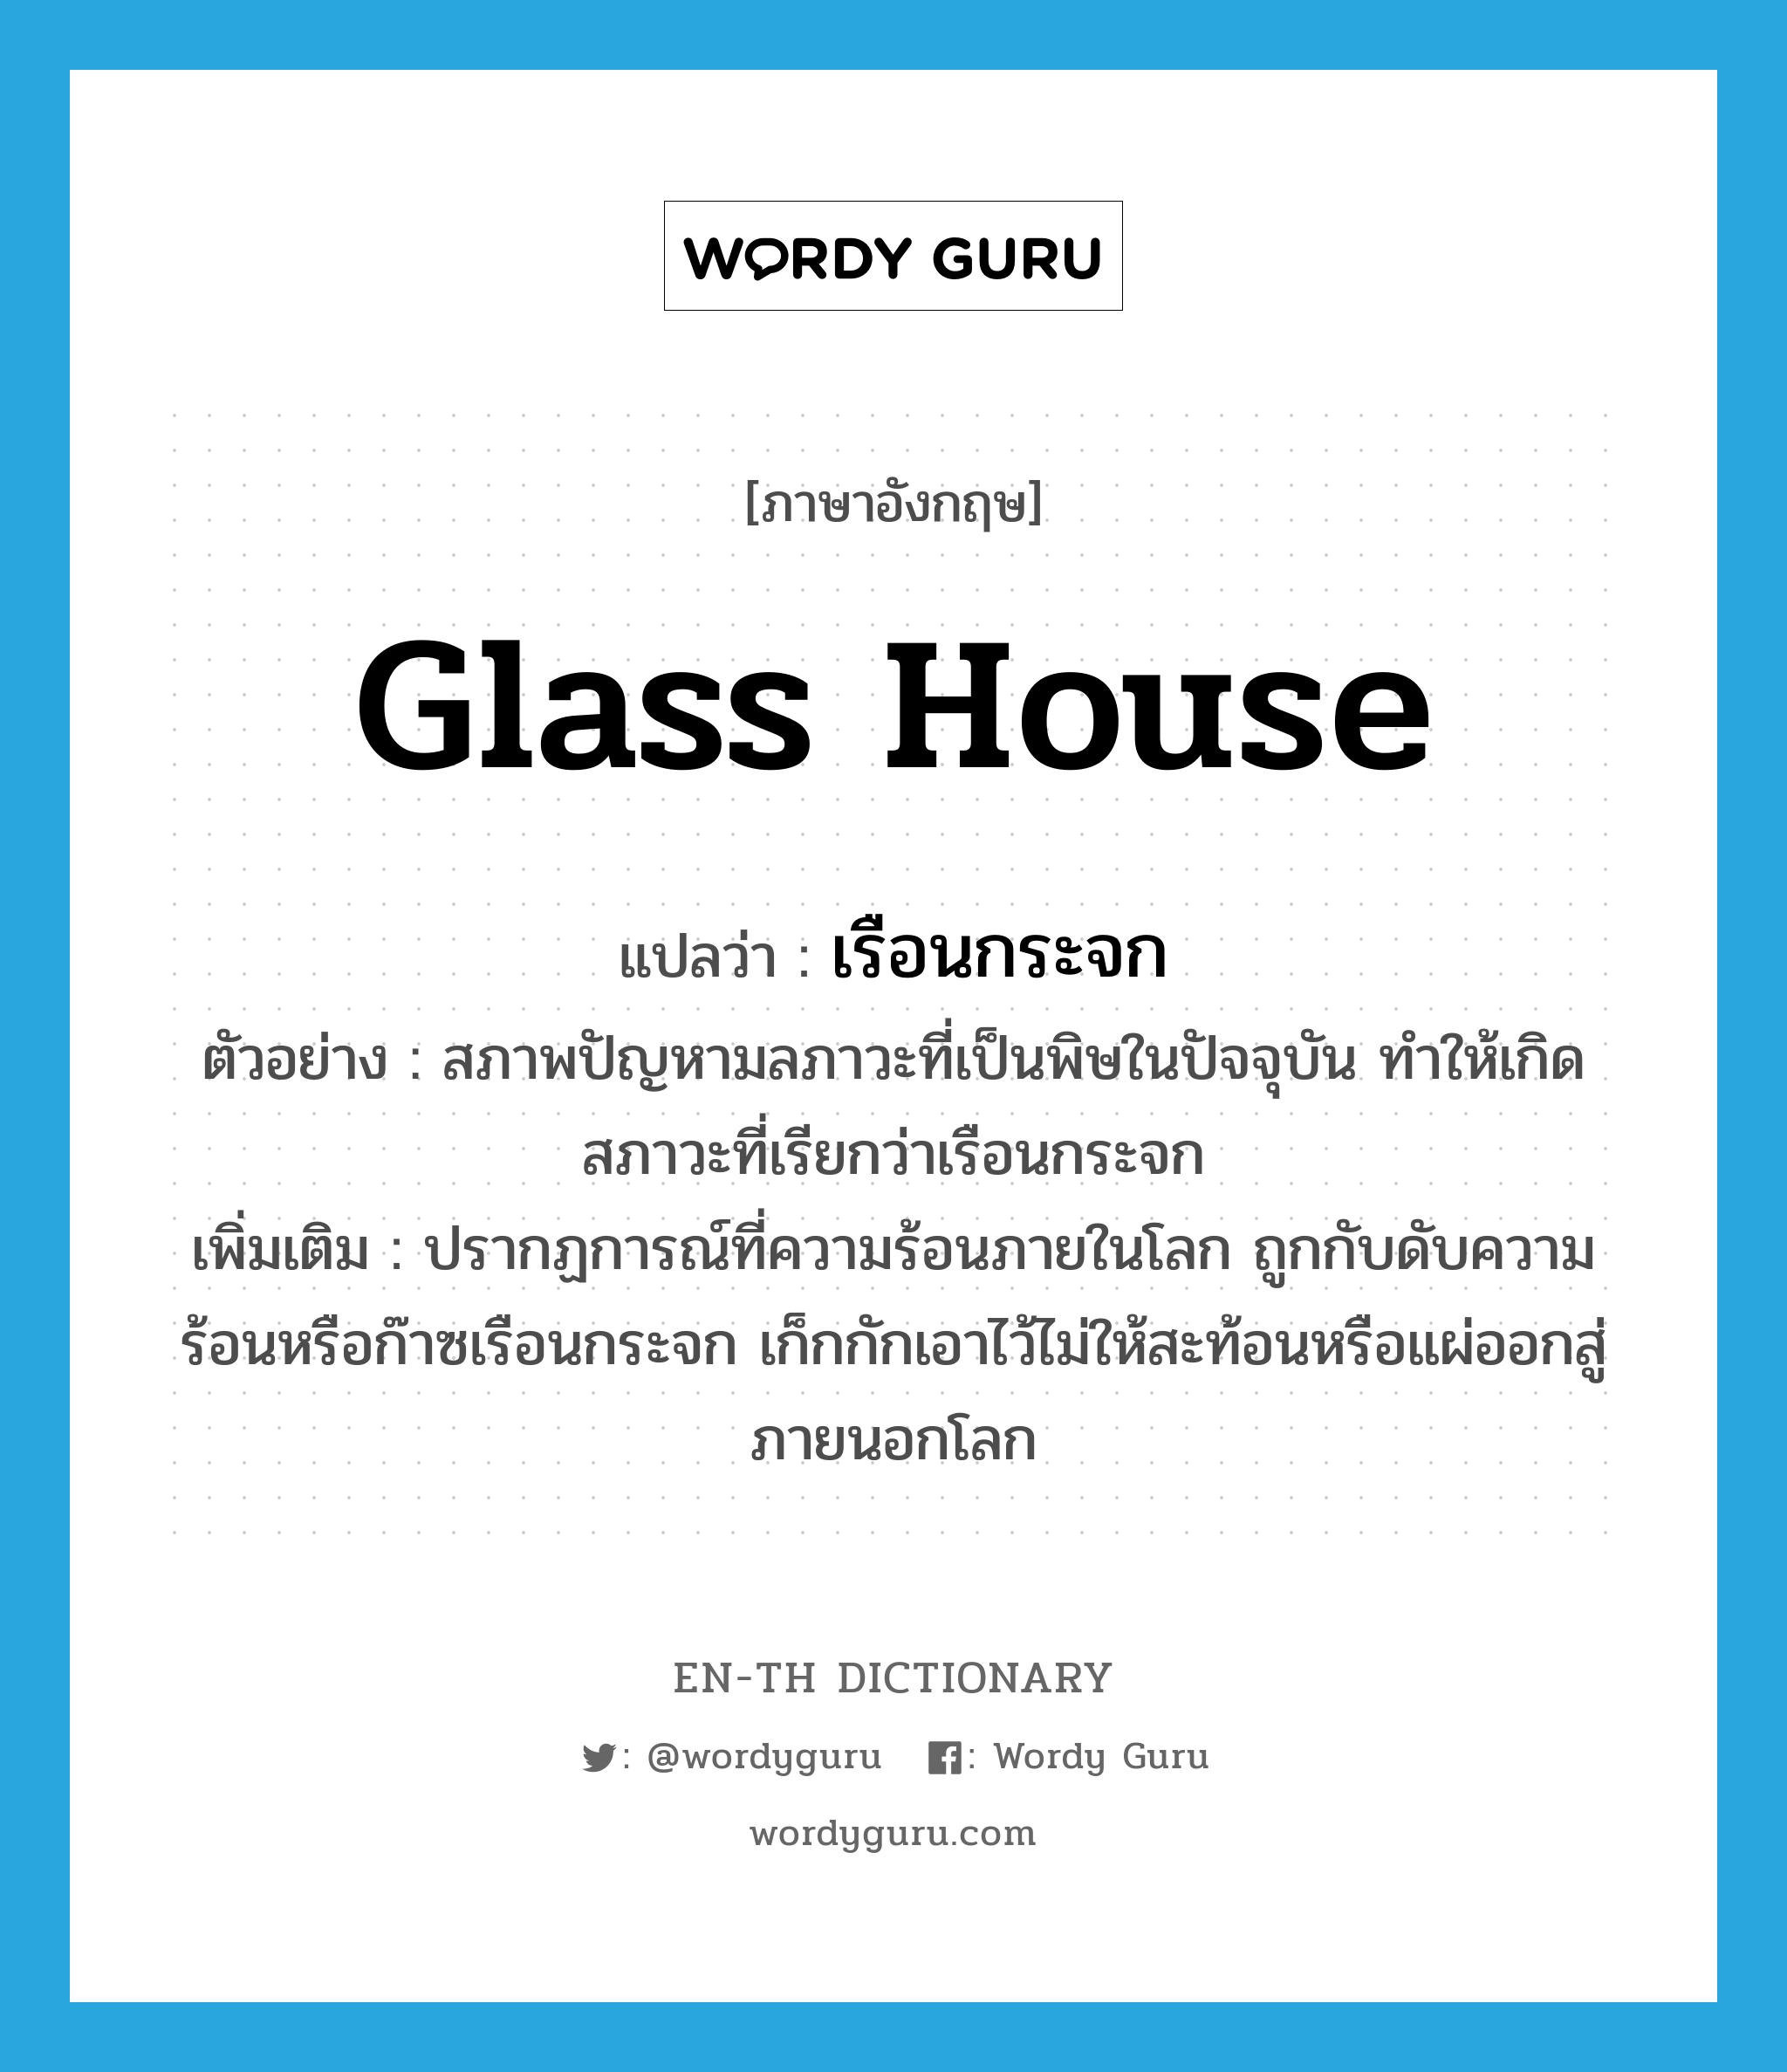 glass house แปลว่า?, คำศัพท์ภาษาอังกฤษ glass house แปลว่า เรือนกระจก ประเภท N ตัวอย่าง สภาพปัญหามลภาวะที่เป็นพิษในปัจจุบัน ทำให้เกิดสภาวะที่เรียกว่าเรือนกระจก เพิ่มเติม ปรากฏการณ์ที่ความร้อนภายในโลก ถูกกับดับความร้อนหรือก๊าซเรือนกระจก เก็กกักเอาไว้ไม่ให้สะท้อนหรือแผ่ออกสู่ภายนอกโลก หมวด N